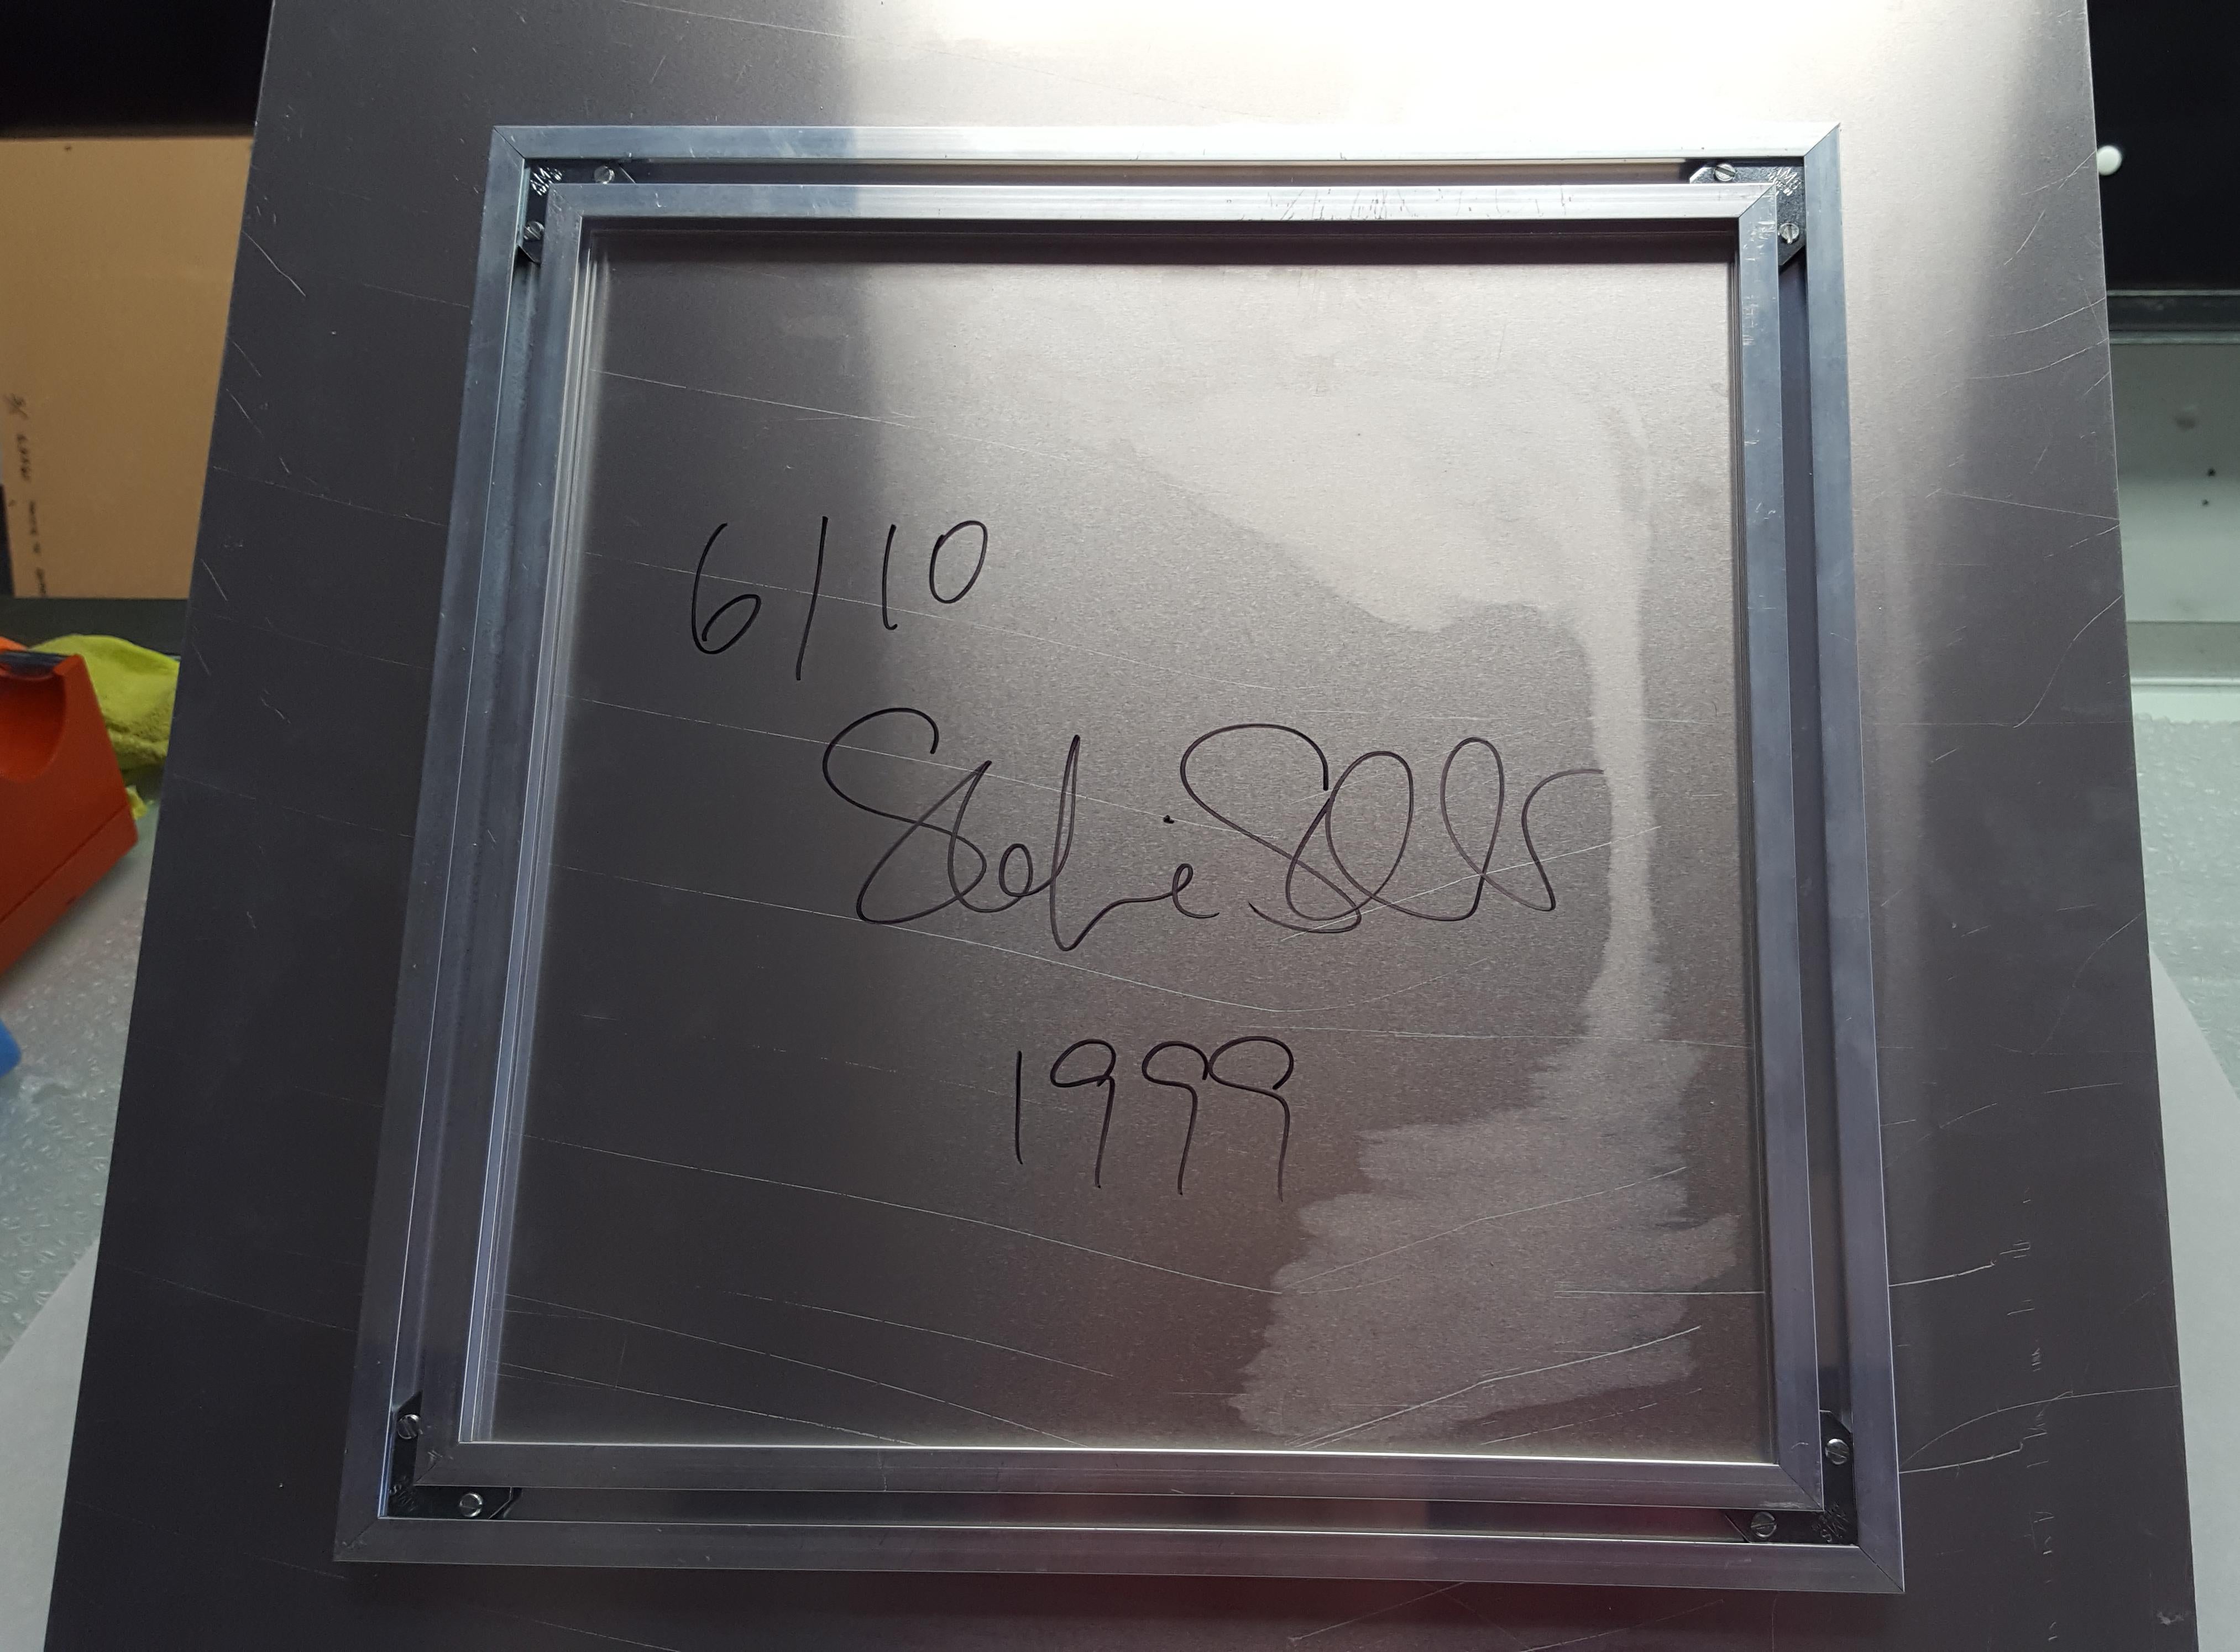 Pont bleu (Stranger than Paradise) - 1999

58x57cm, 
Édition 6/10. 
C-Print analogique, imprimé à la main par l'artiste sur du papier Fuji Crystal Archive, d'après le Polaroïd original.
Monté sur aluminium avec protection UV mate.
Inventaire